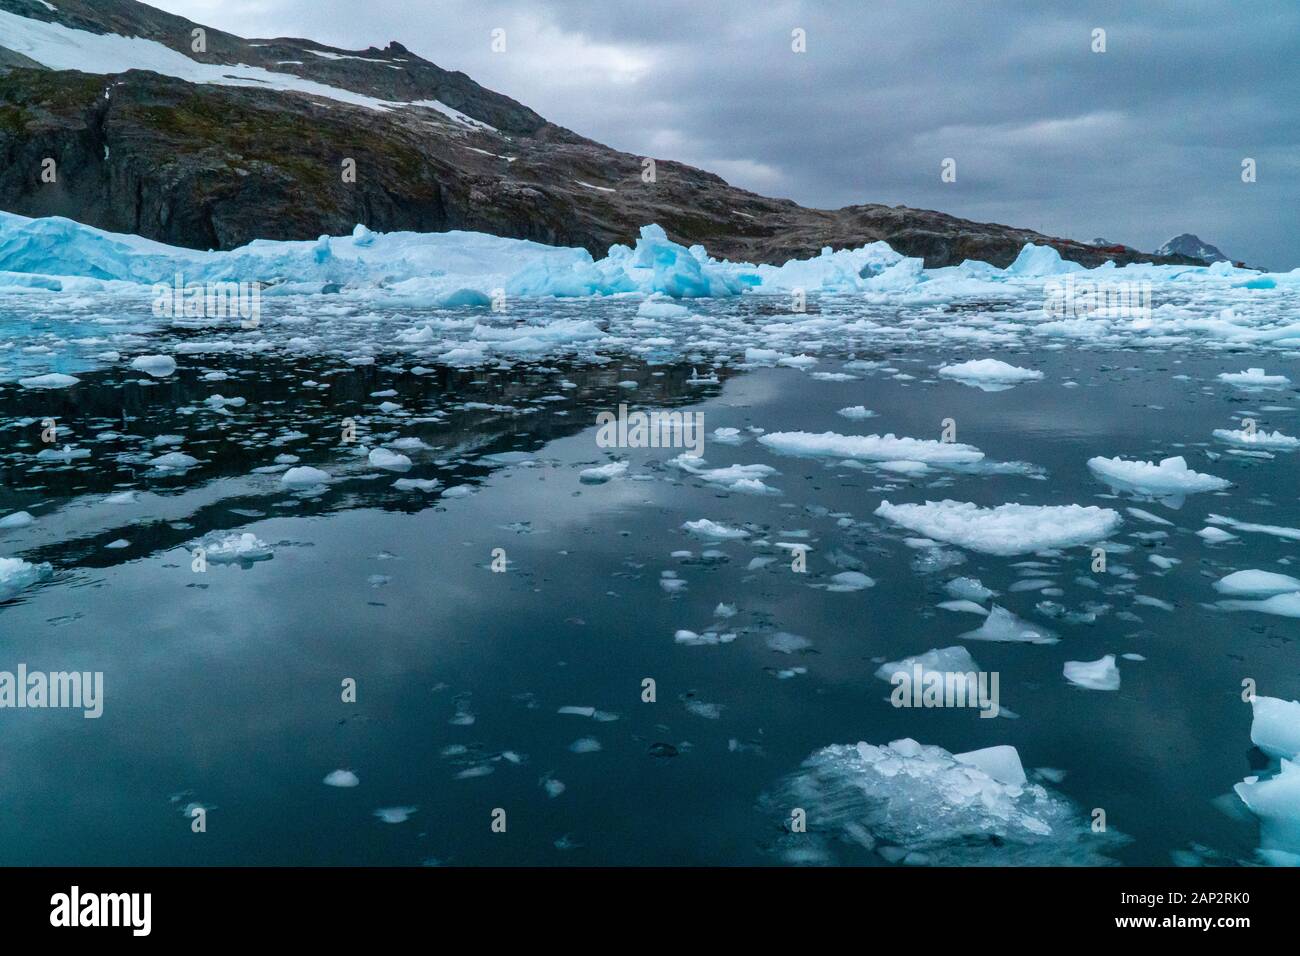 Schmelzenden Eisbergs Eisscholle im Vordergrund, Schwimmen im Meer, Antarktis Stockfoto